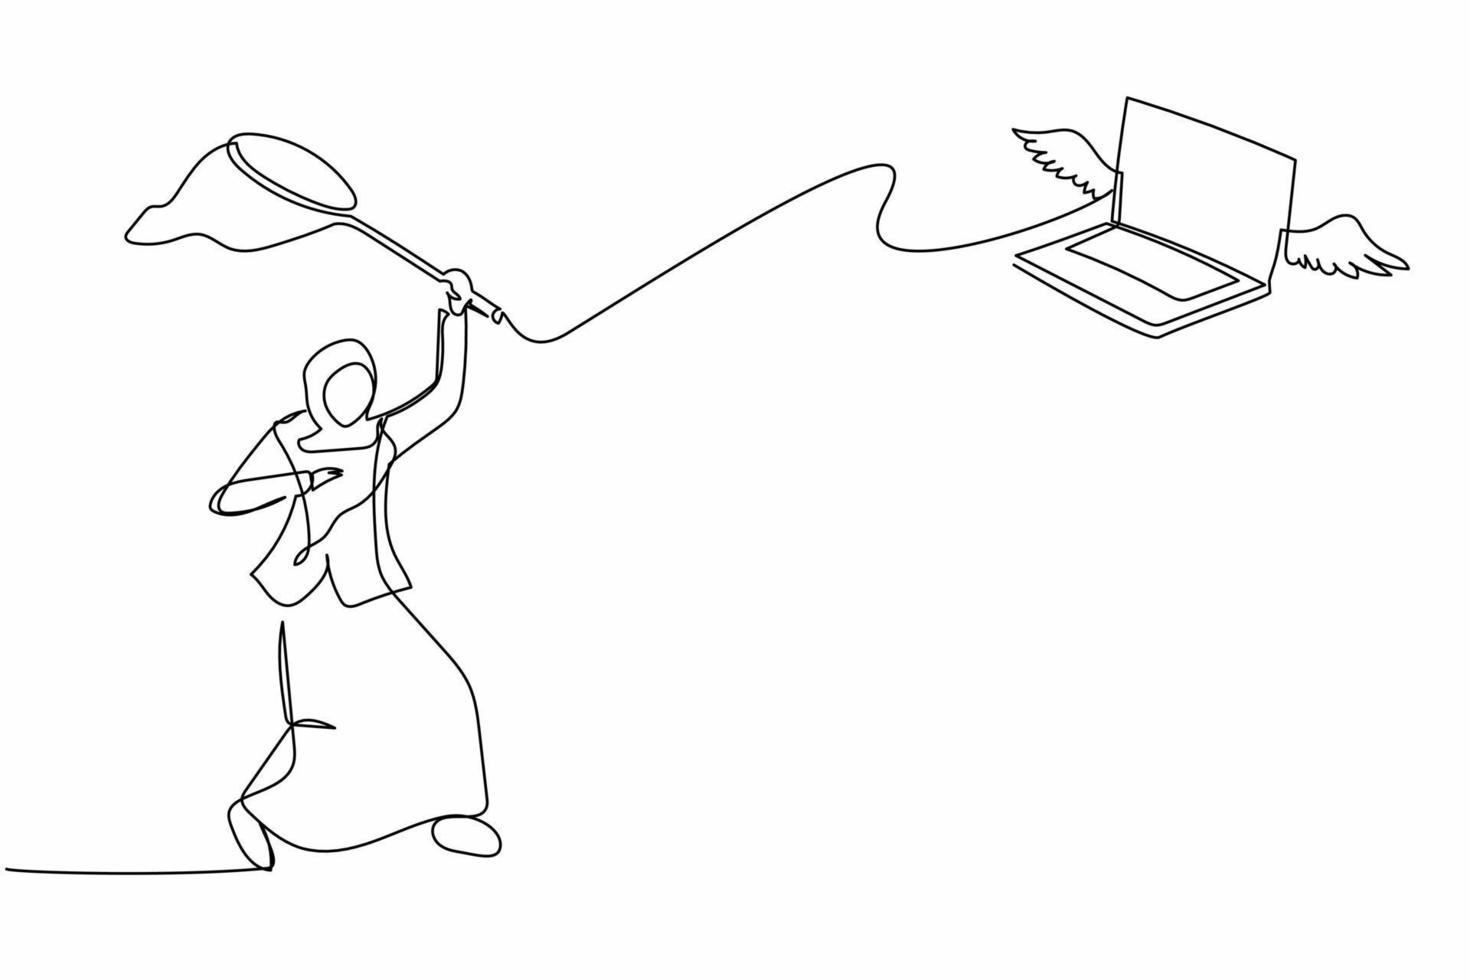 una sola línea de dibujo de una mujer de negocios árabe intenta atrapar una laptop voladora con una red de mariposas. pérdida de datos o documentos debido a un virus informático. ilustración de vector gráfico de diseño de dibujo de línea continua